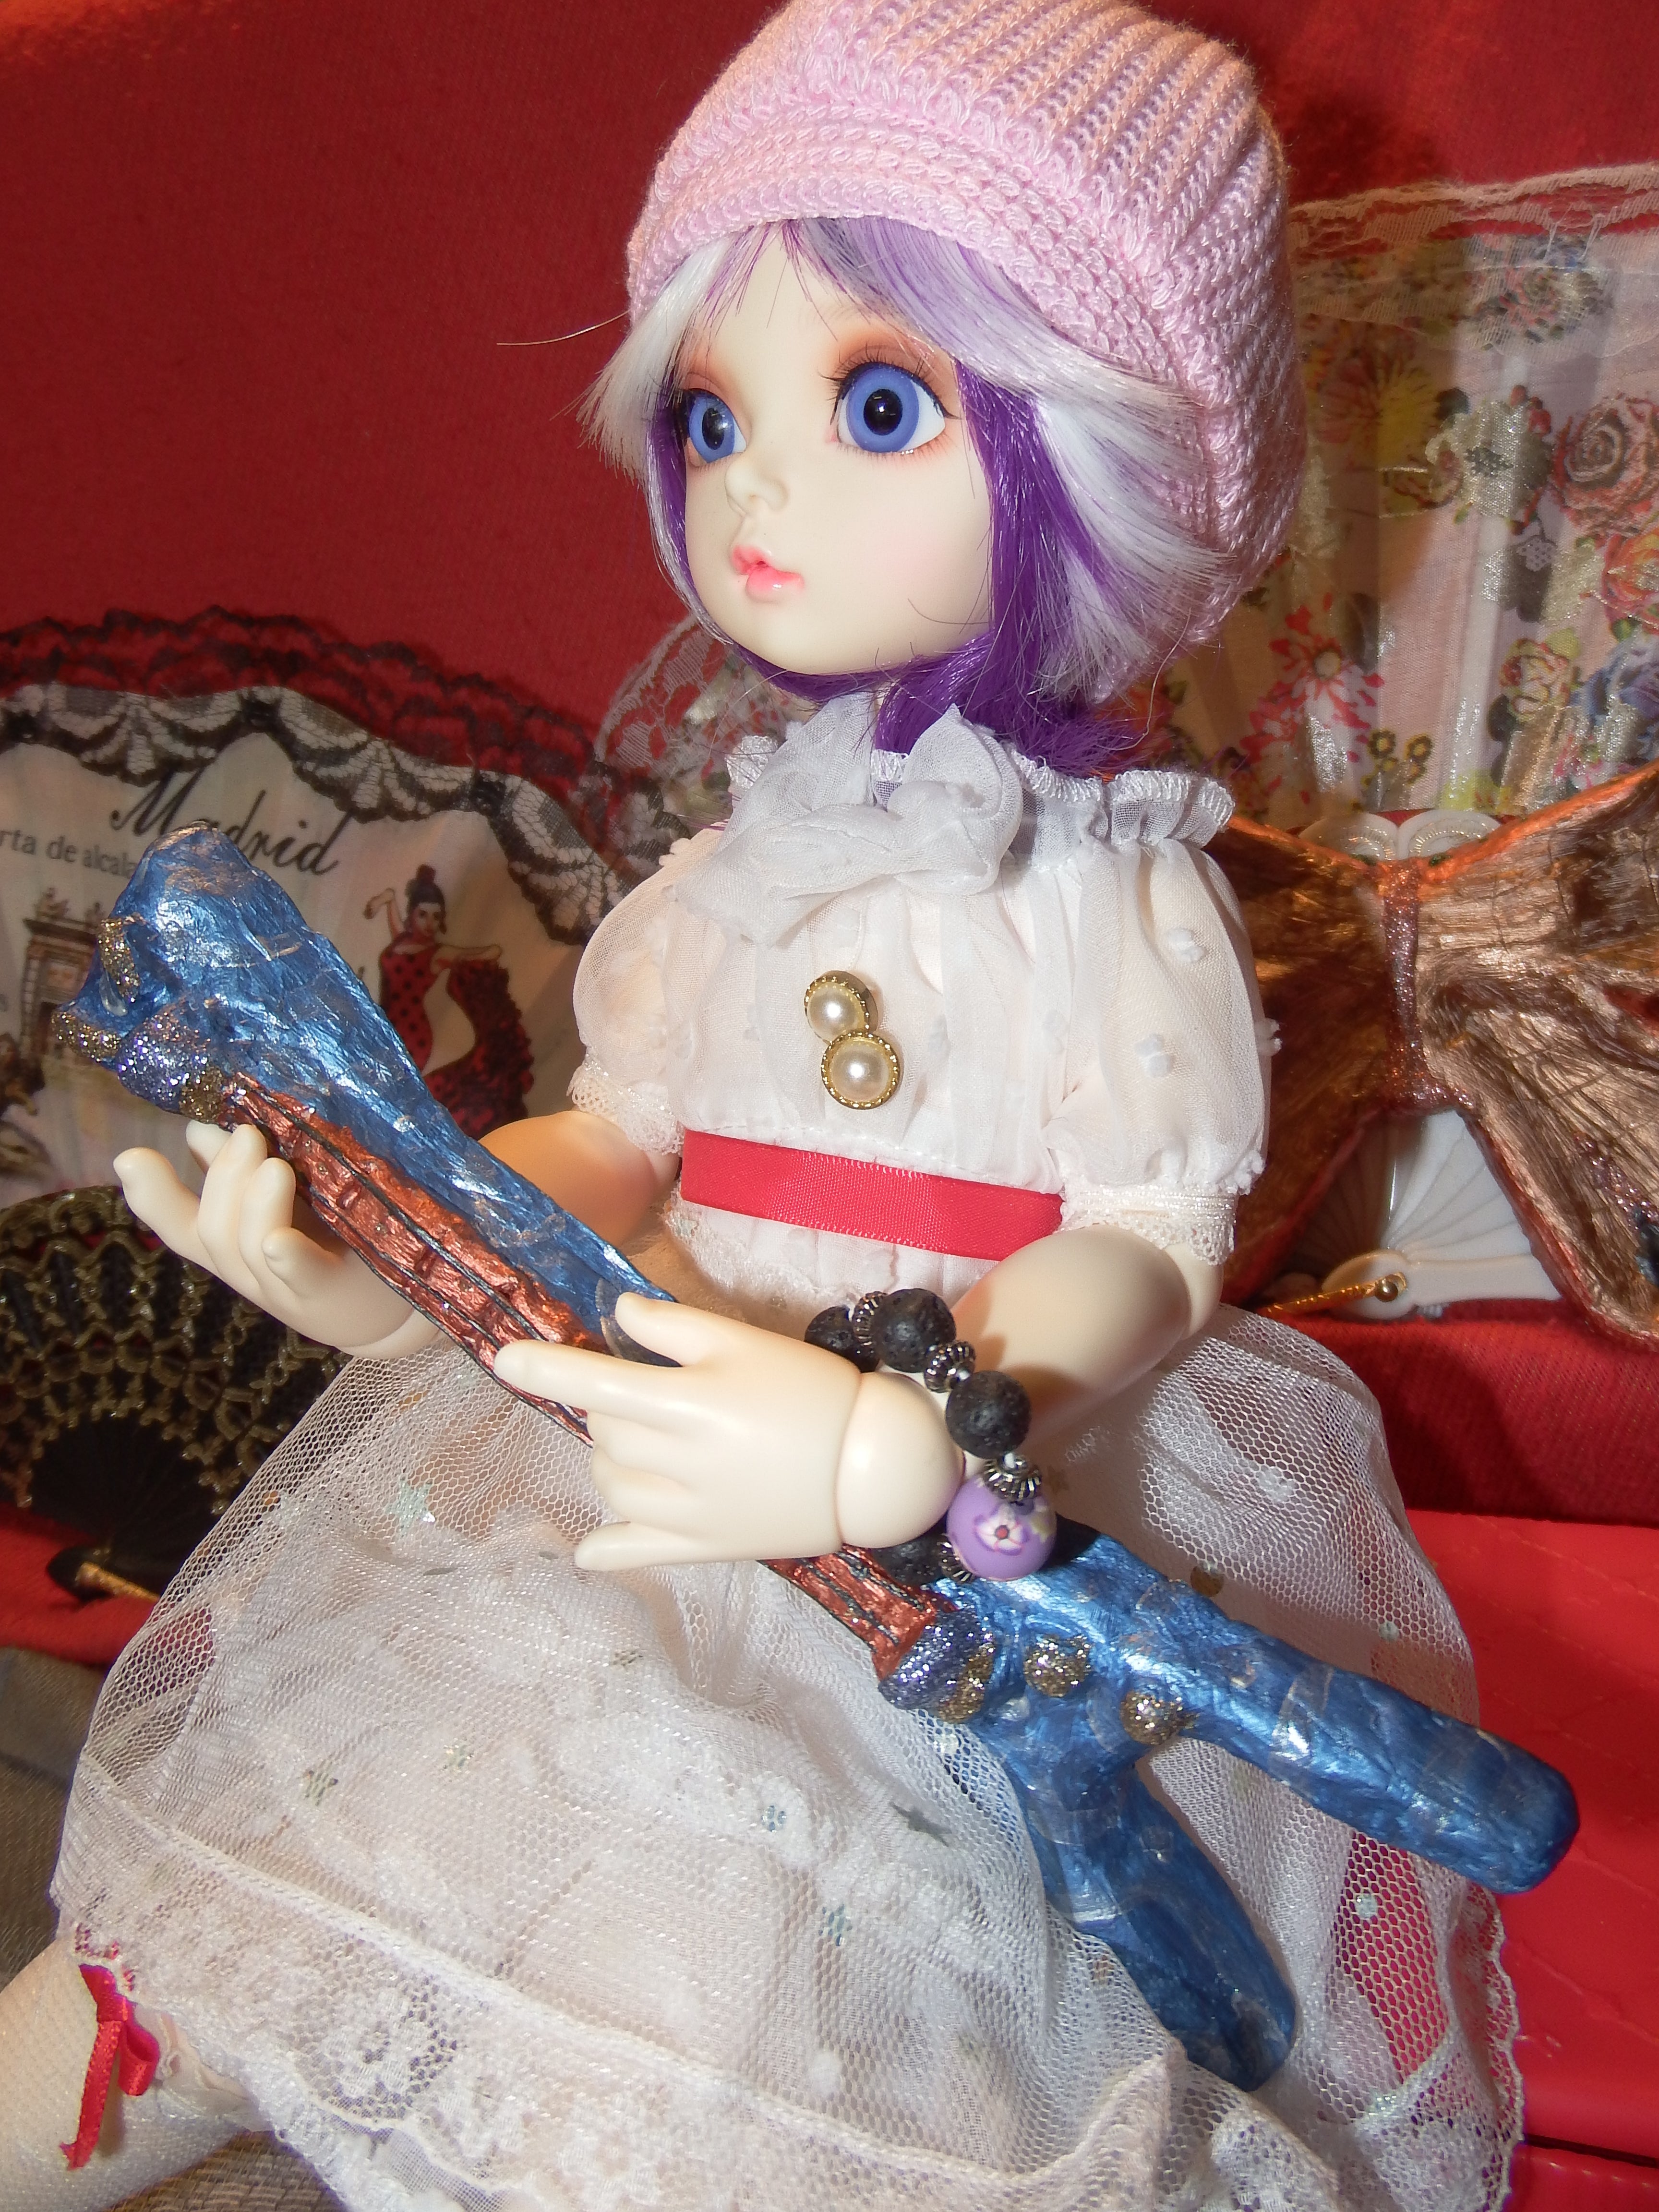 artsy sister, bjd doll, music instrument